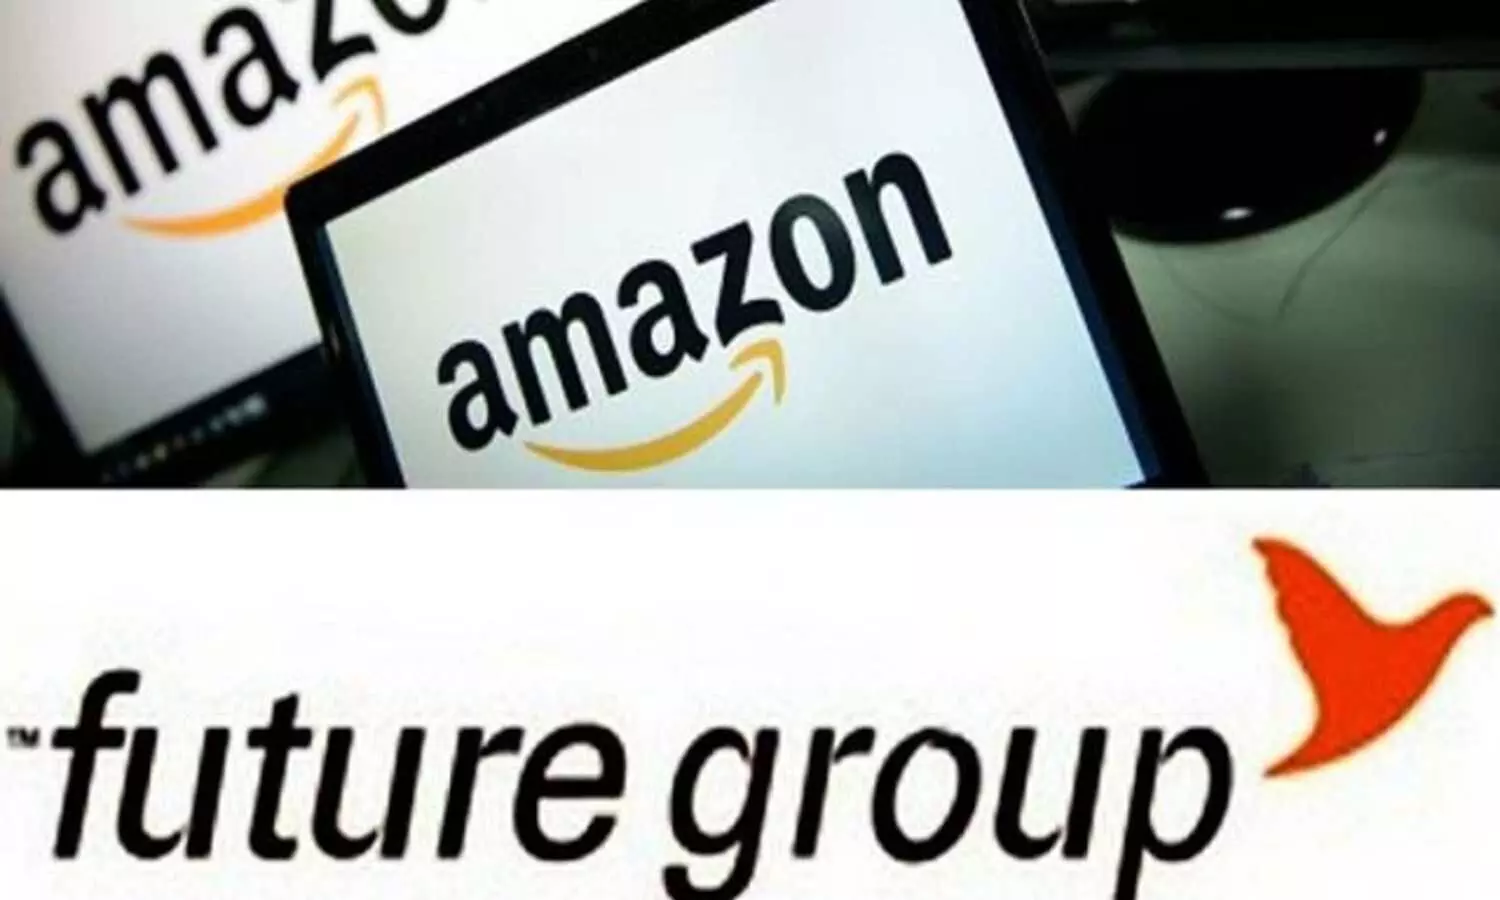 Amazon and Future Retail